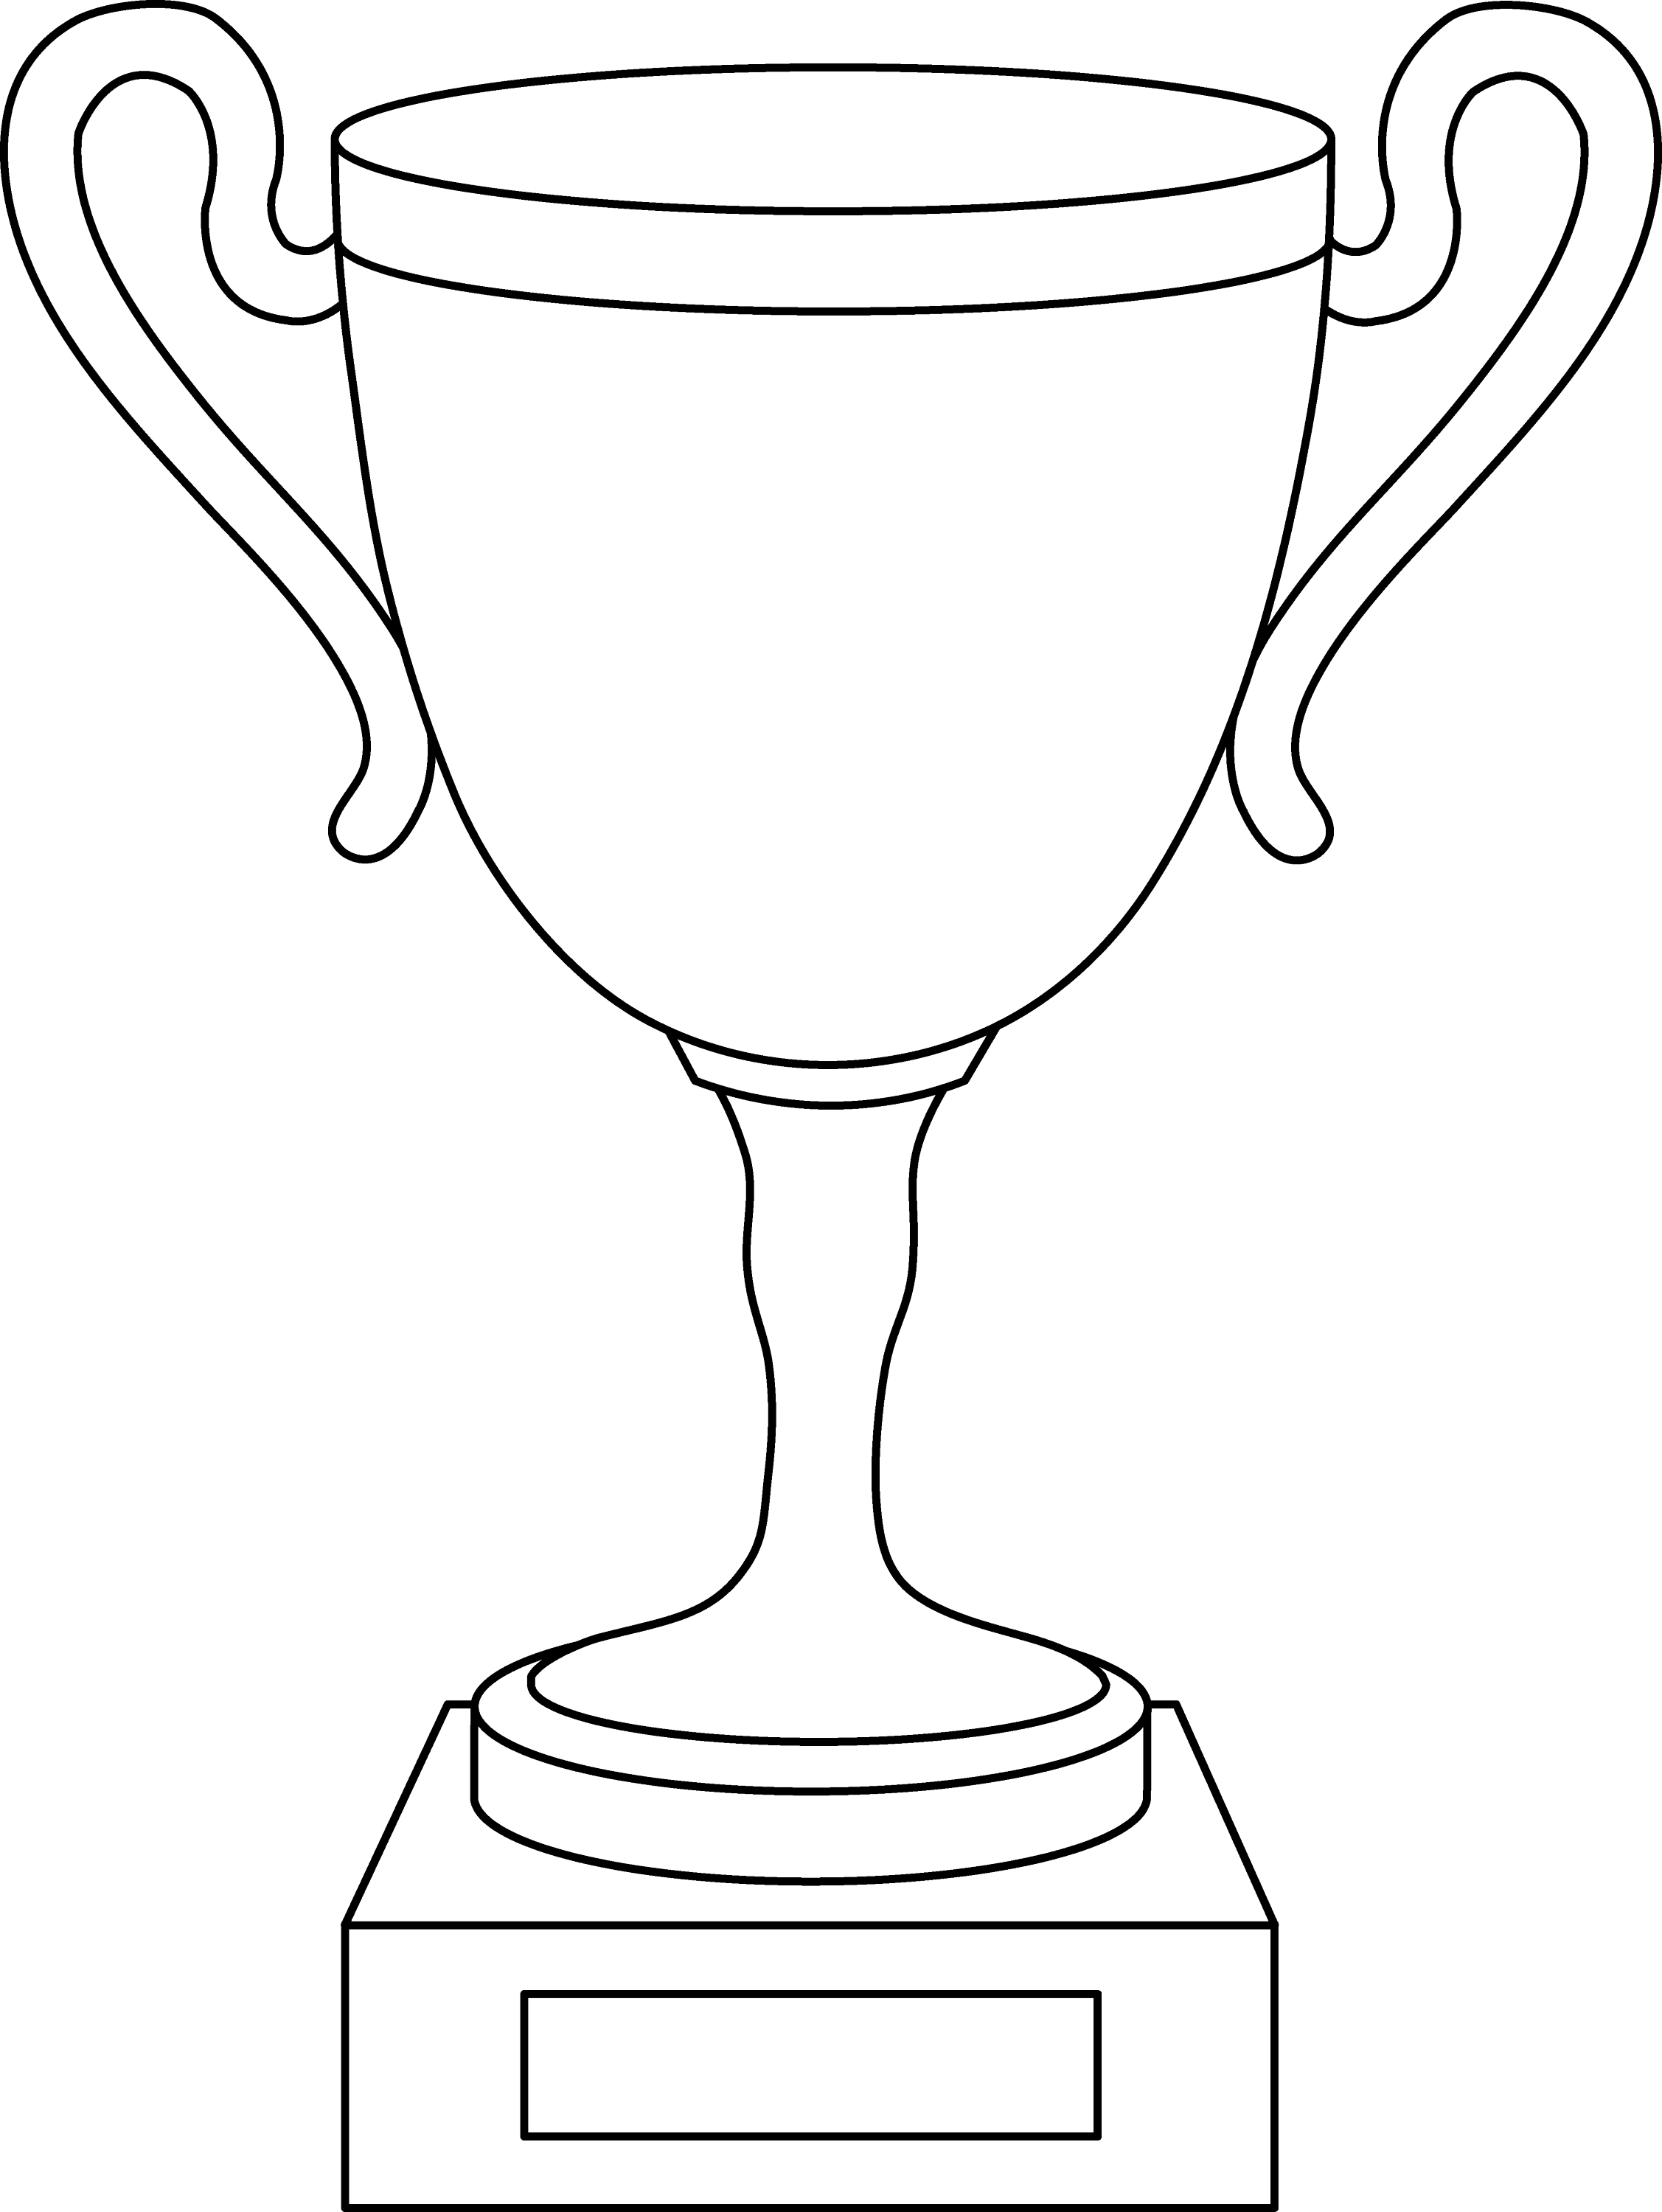 Trophy Cup Line Art - Free Clip Art